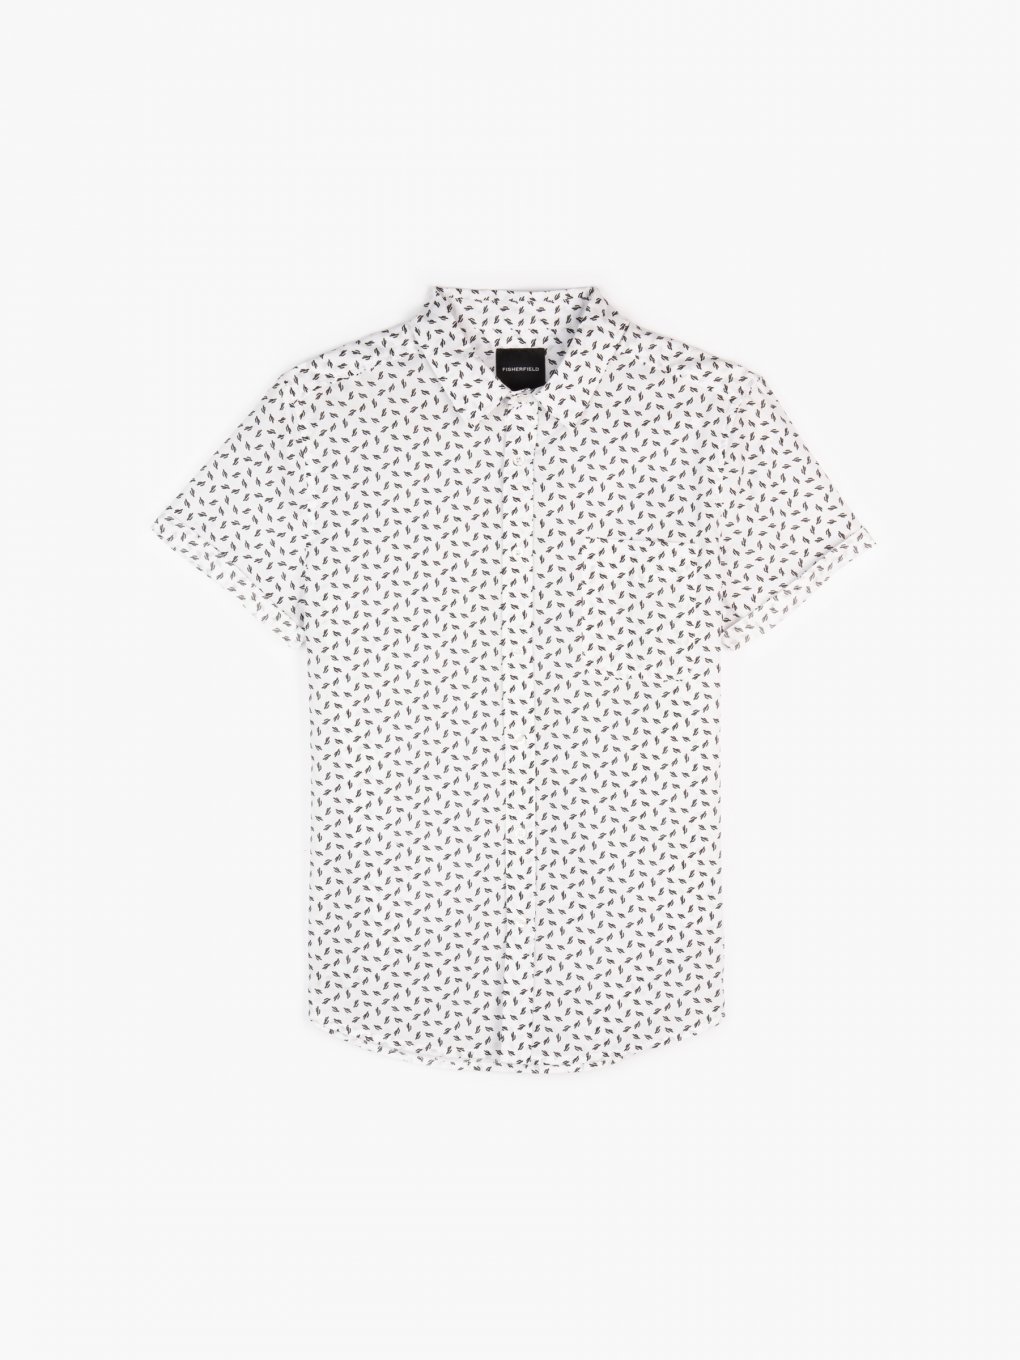 Potištěná bavlněná košile slim fit s krátkým rukávem pánská